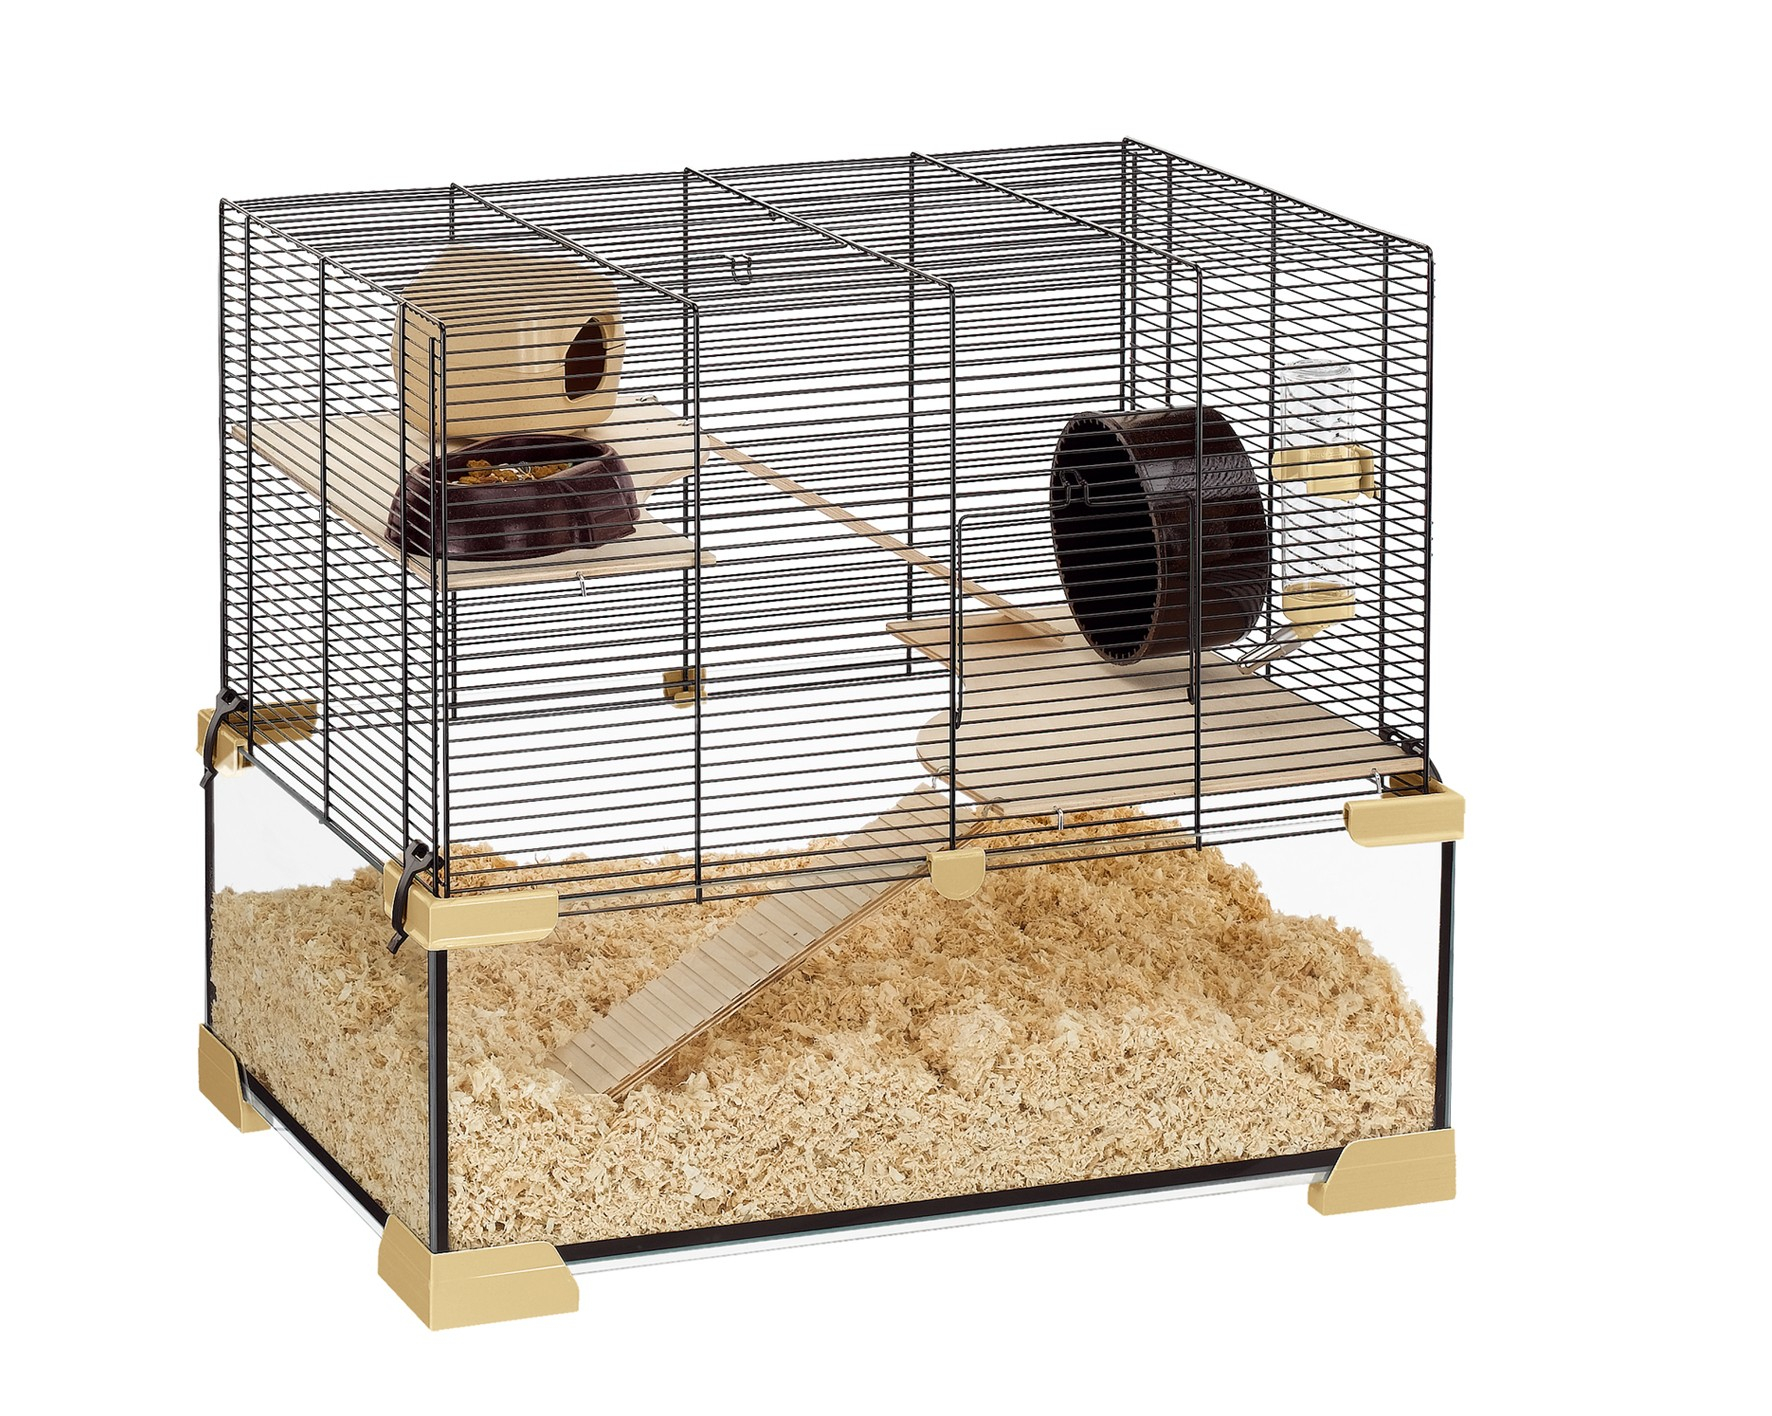 Jaula de vidrio para pequeños roedores - de 59,5 a 98,5 cm - Ferplast Karat